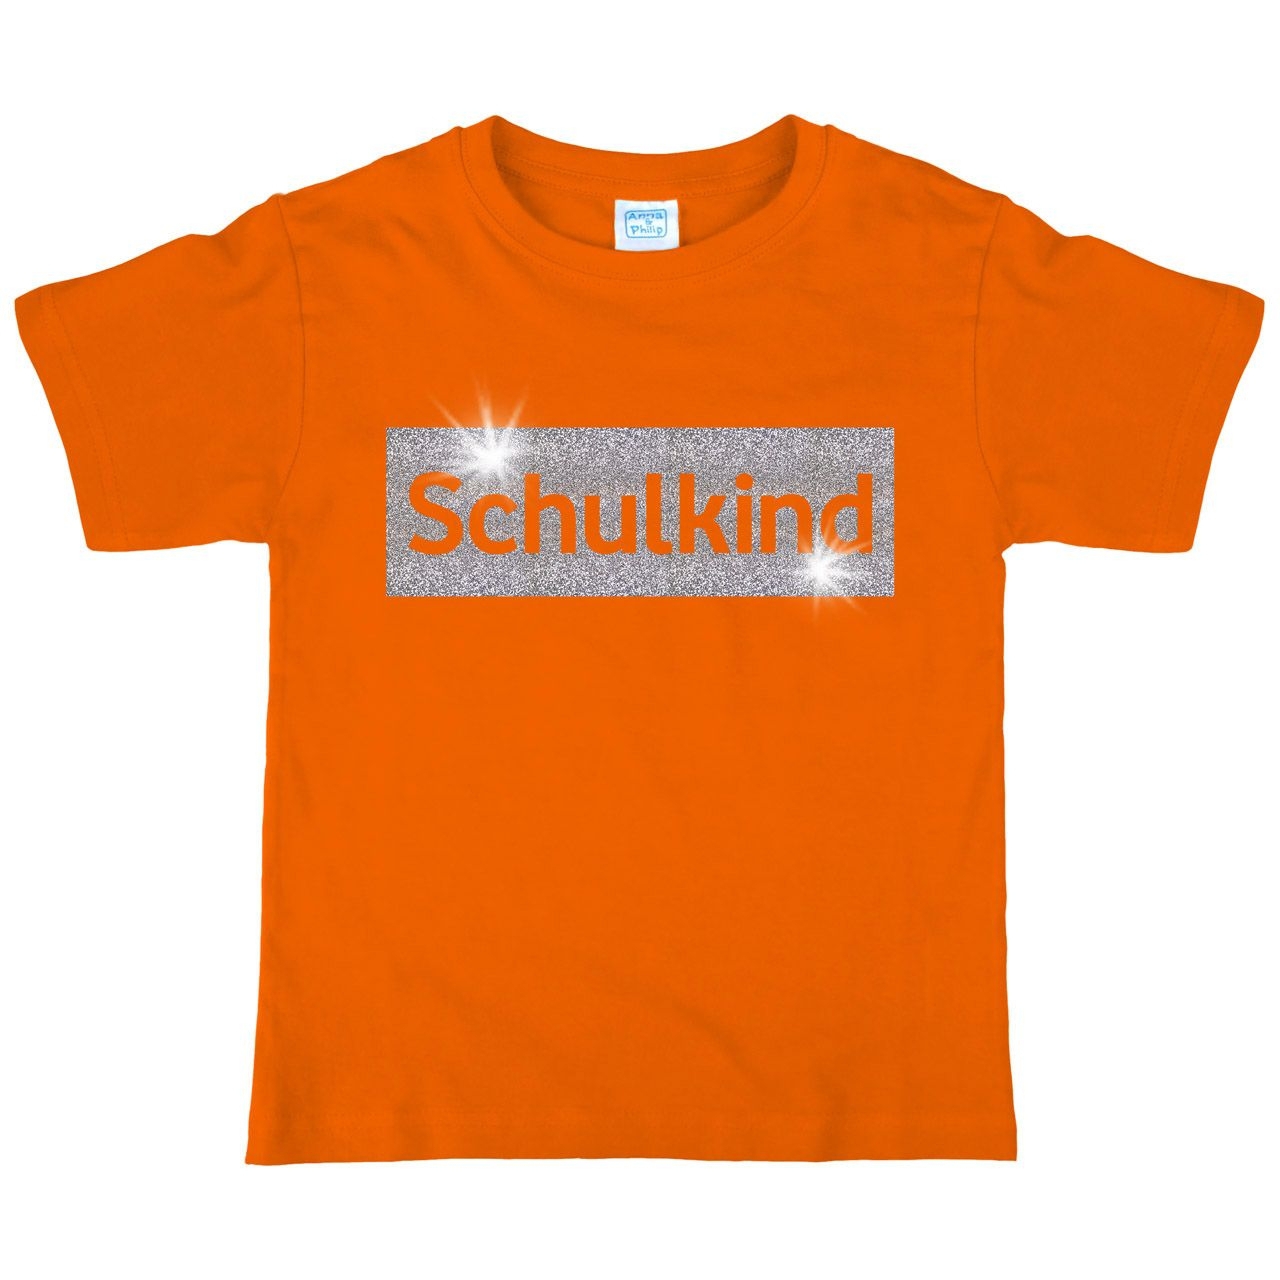 Schulkind Glitzer Kinder T-Shirt mit Namen orange 122 / 128